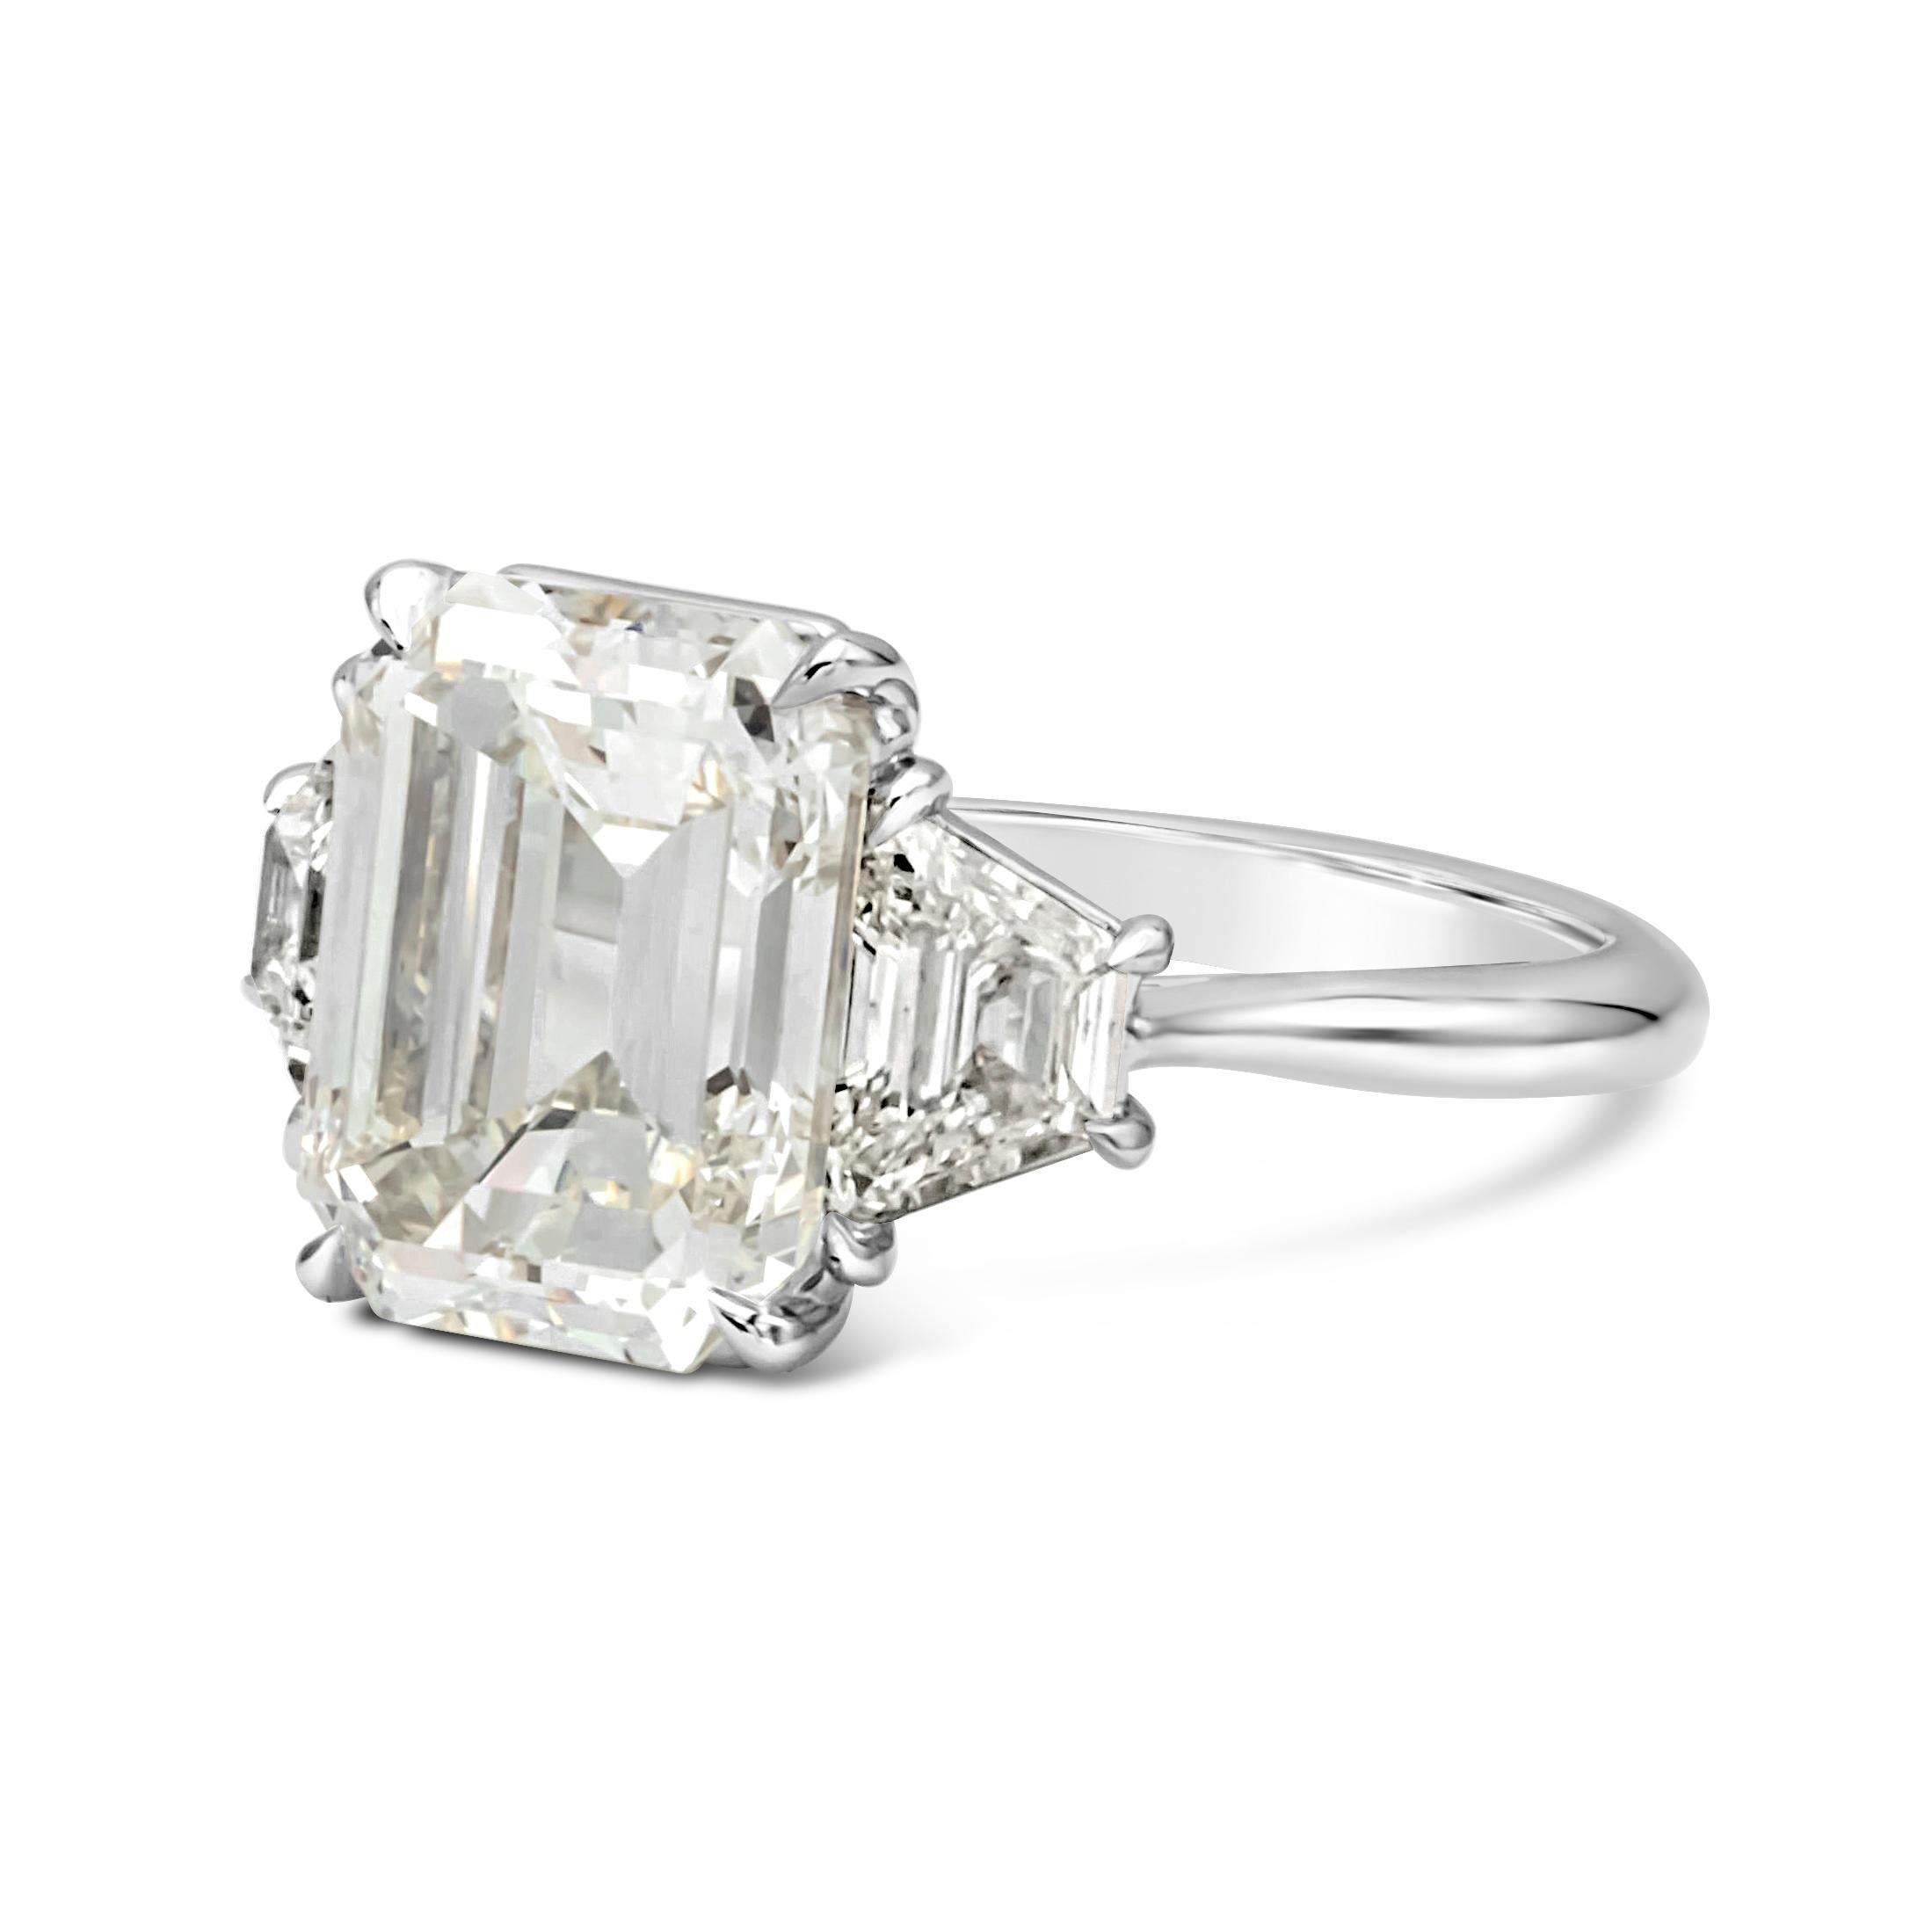 Elegant gemacht drei Stein Verlobungsring verfügt über einen 5,81 Karat Smaragdschliff Diamant zertifiziert von GIA als K Farbe, VS2 in Klarheit, in Platin vier Zacken Fassung. Flankiert von Diamanten im Billionenschliff auf jeder Seite, mit einem